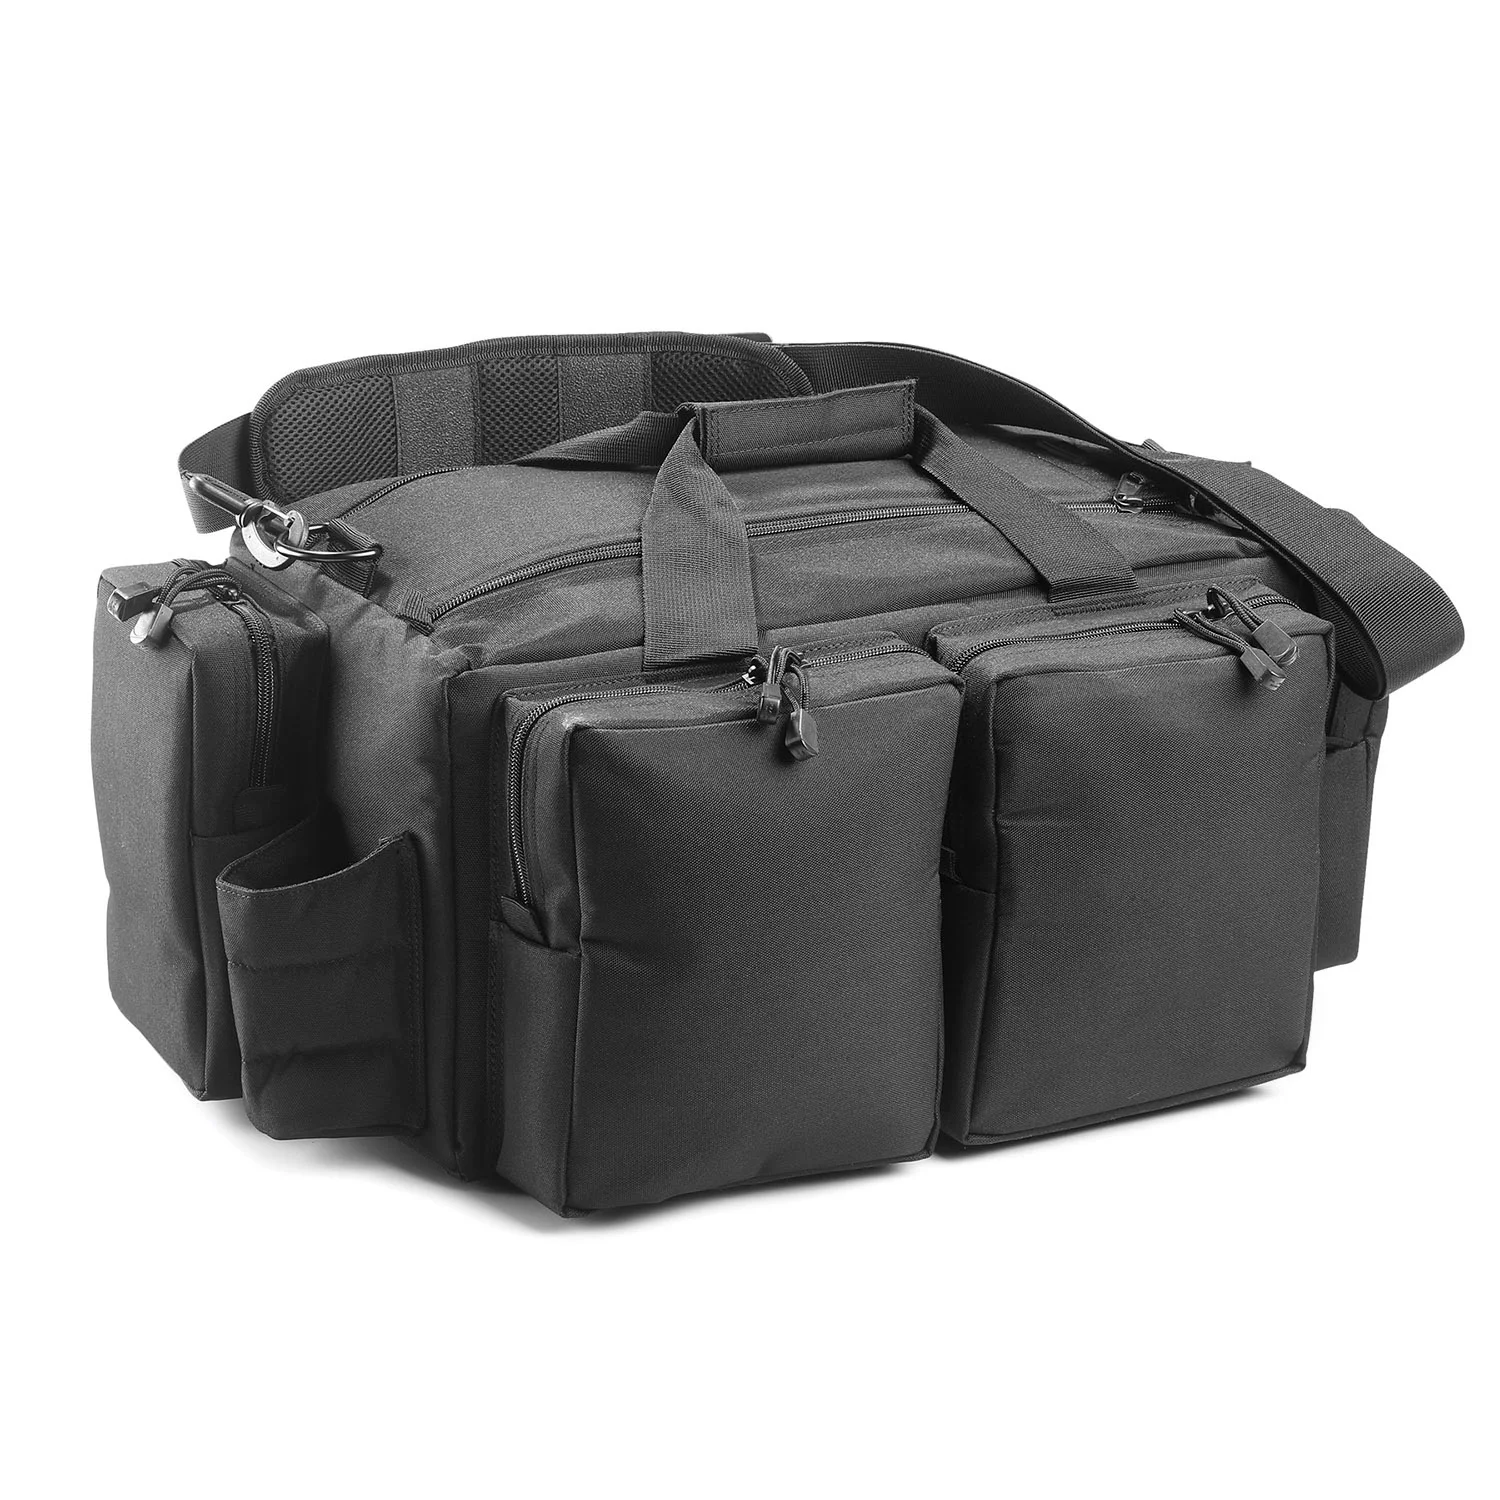 Deluxe Gun Bag Tactical Gun Range Bag - Buy Gun Range Bag,Range Bag ...